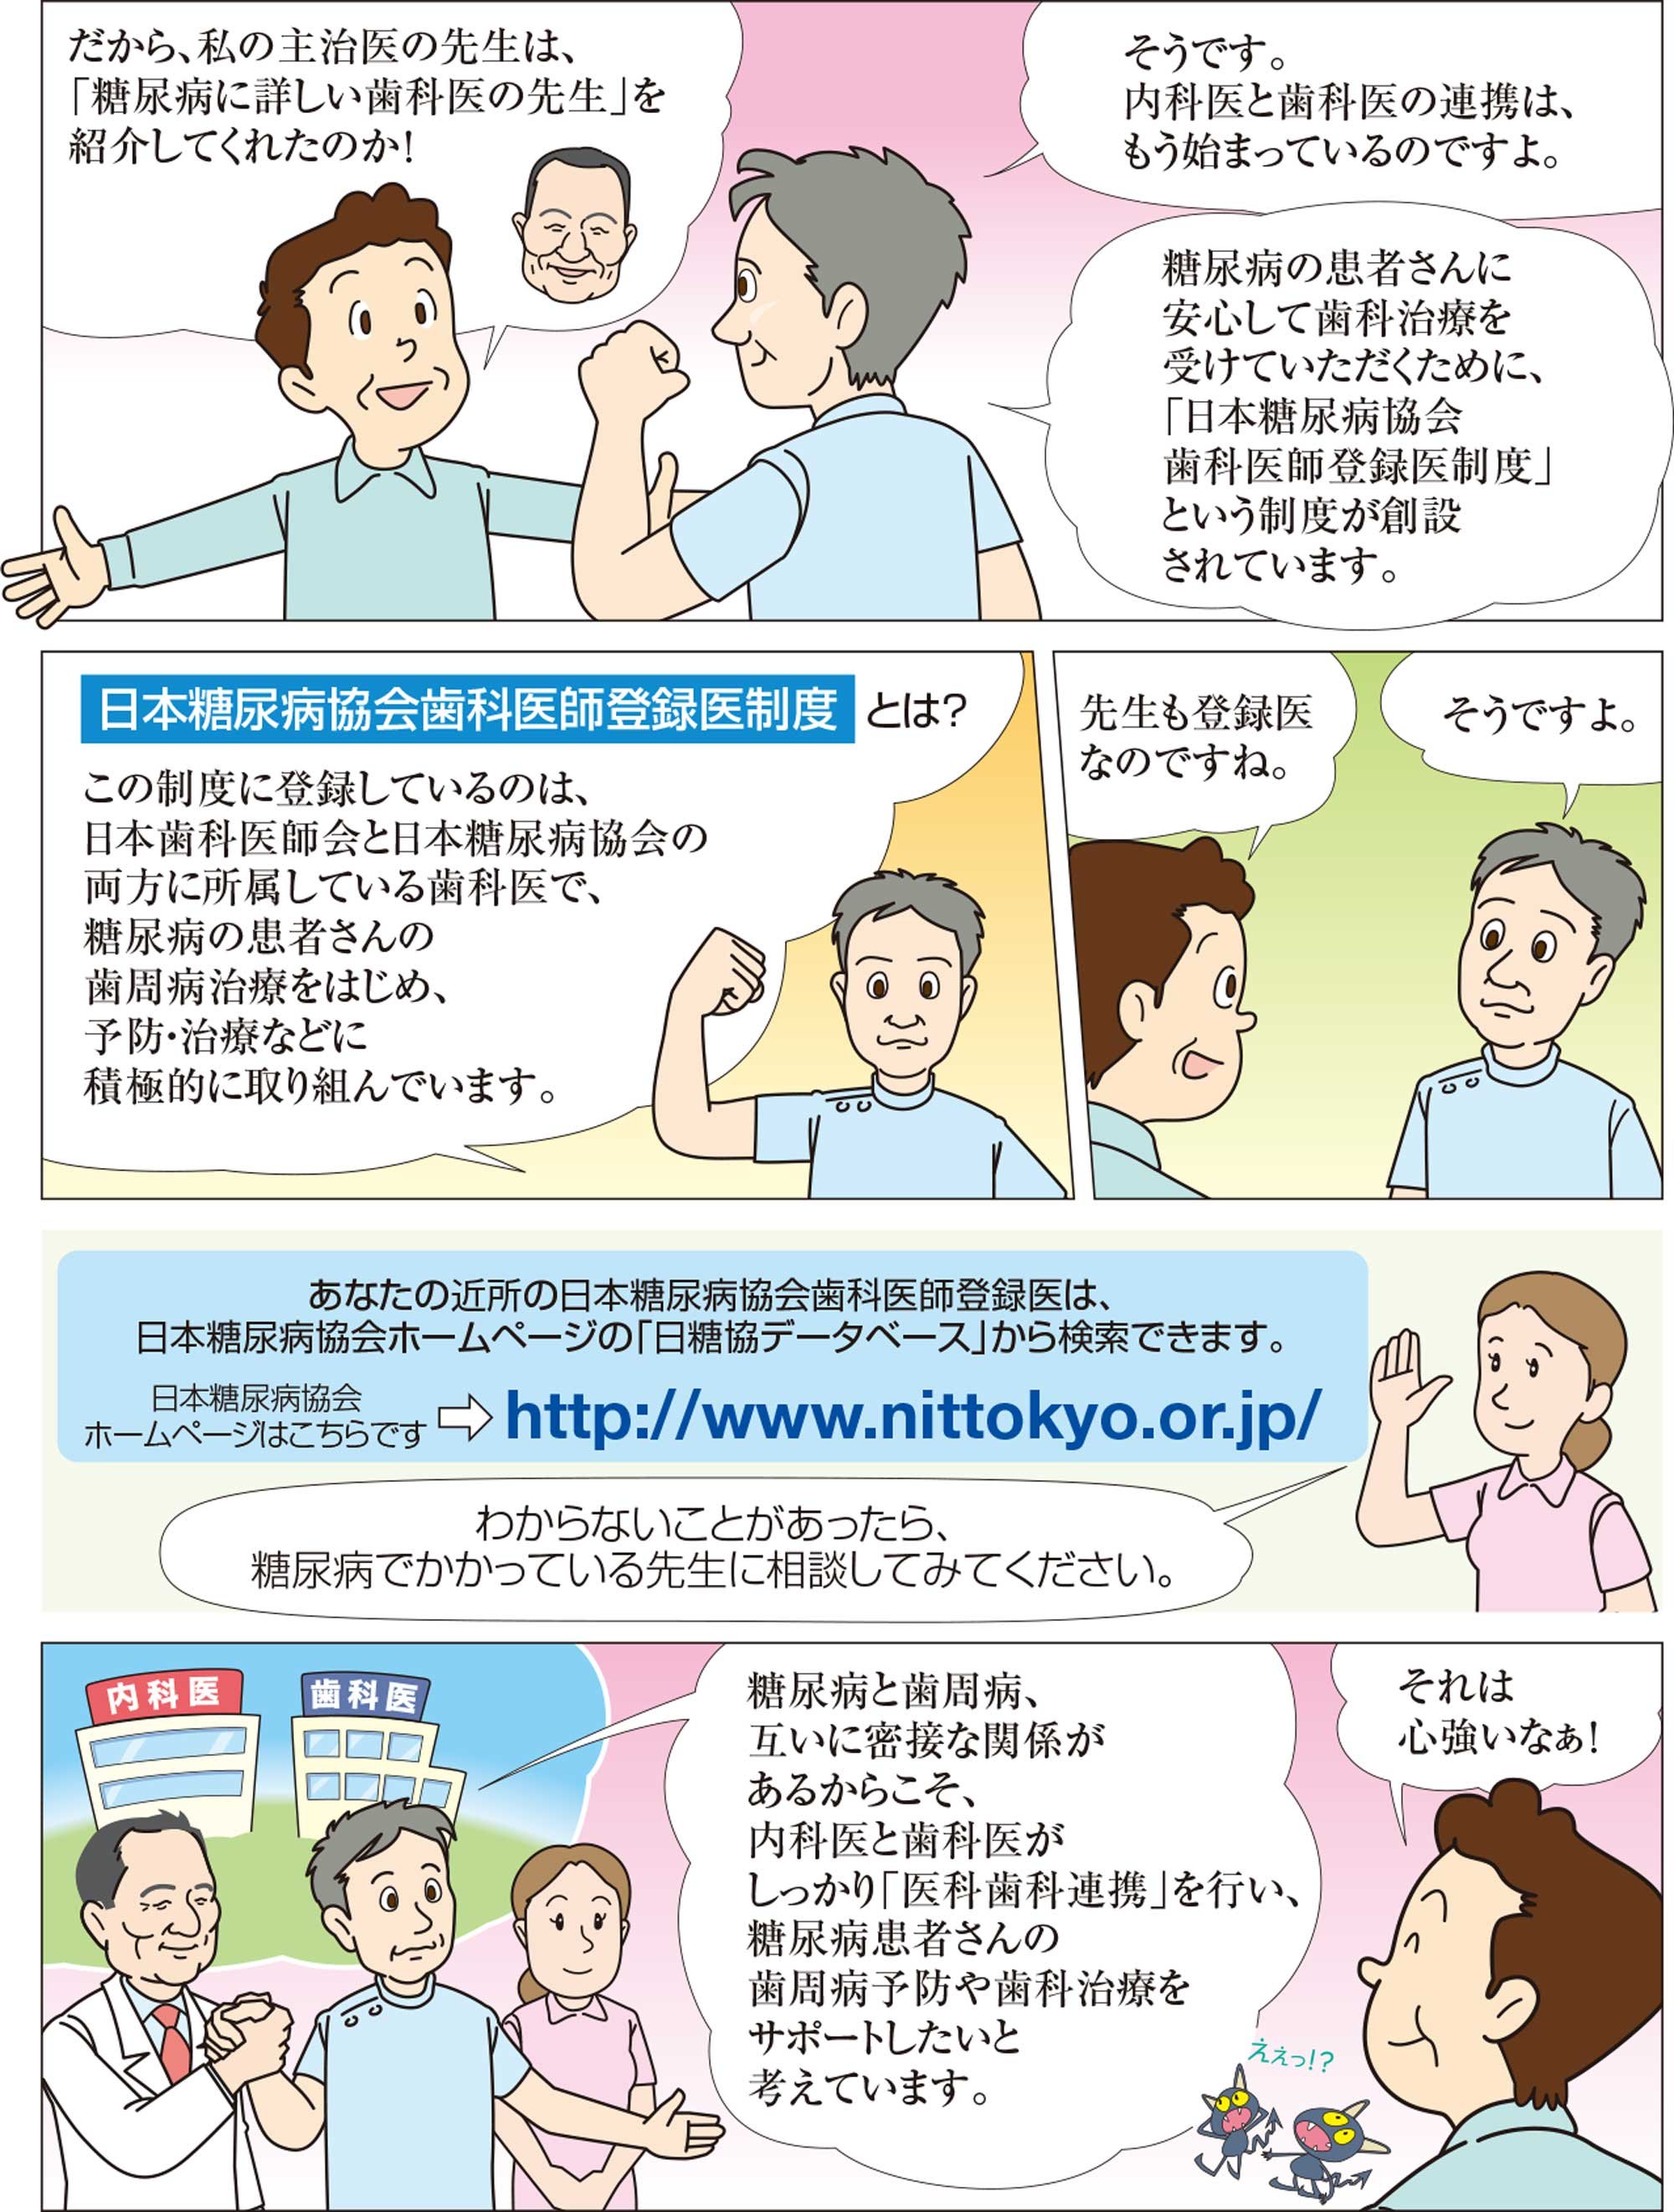 日本糖尿病協会歯科医師登録医、内科医と歯科医の連携